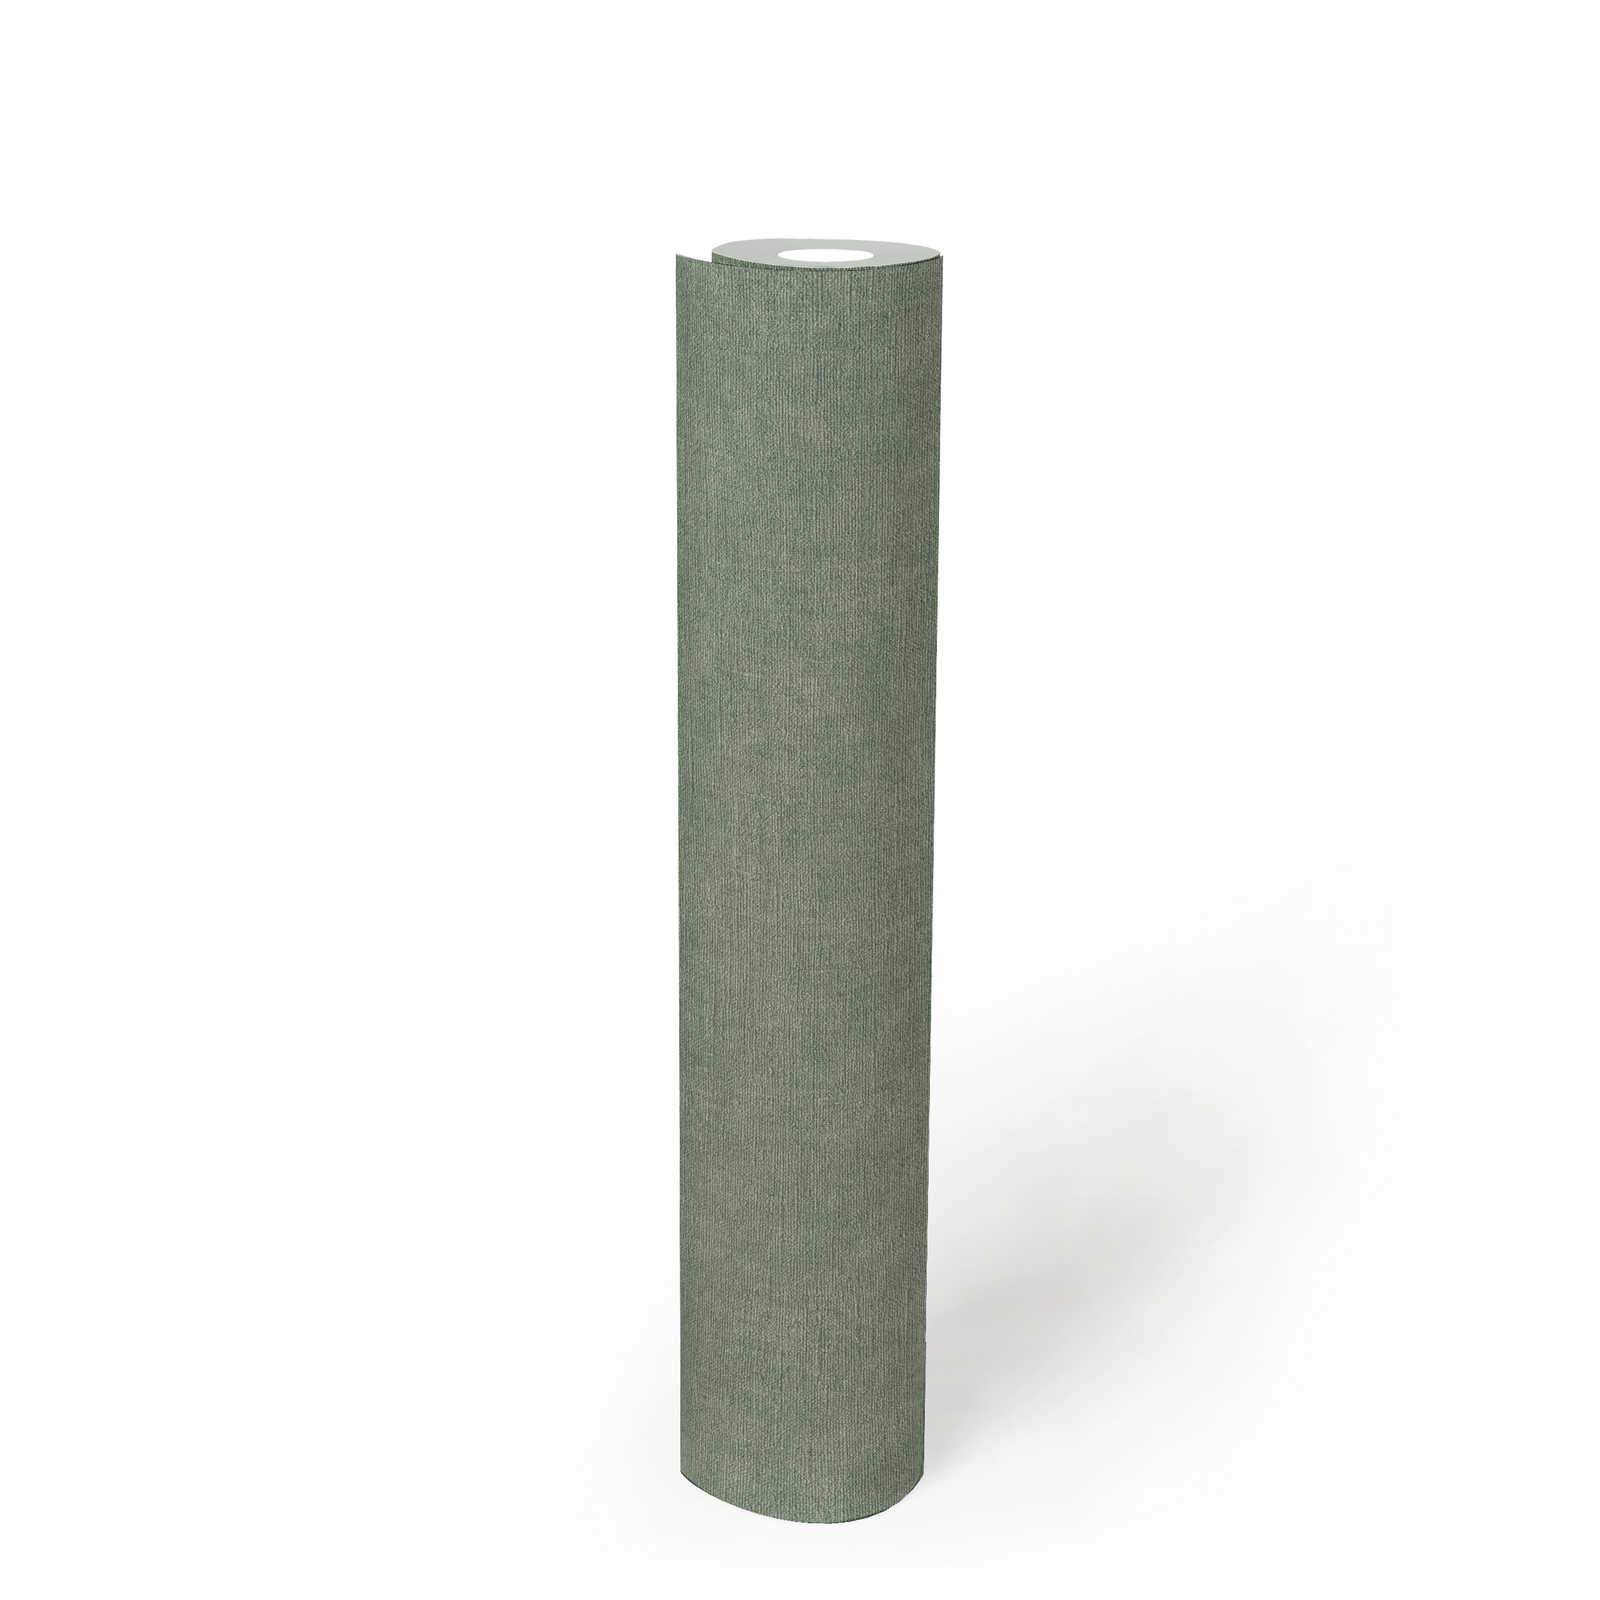             Licht gestructureerd behang in textiellook - groen, grijs
        